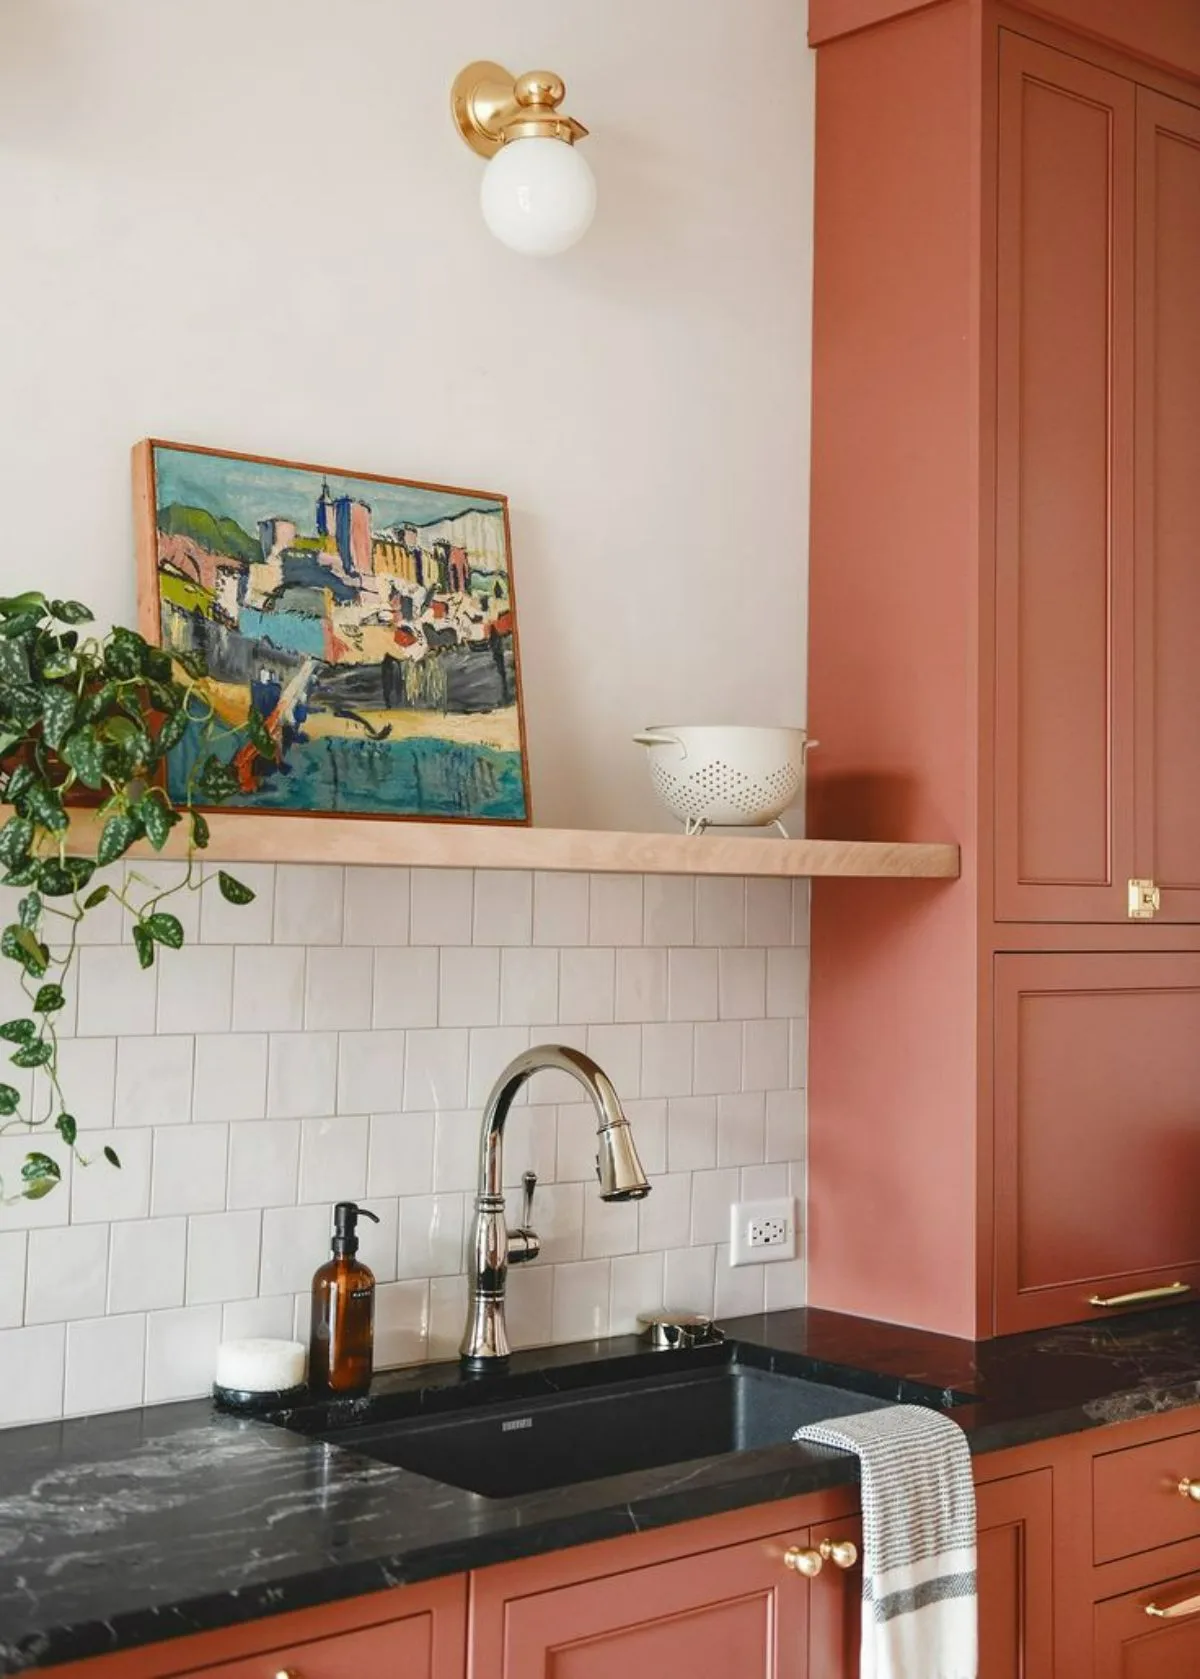 آشپزخانه با قفسه هلویی ملایم که روی آن قاب نقاشی و گلدان قرار دارد